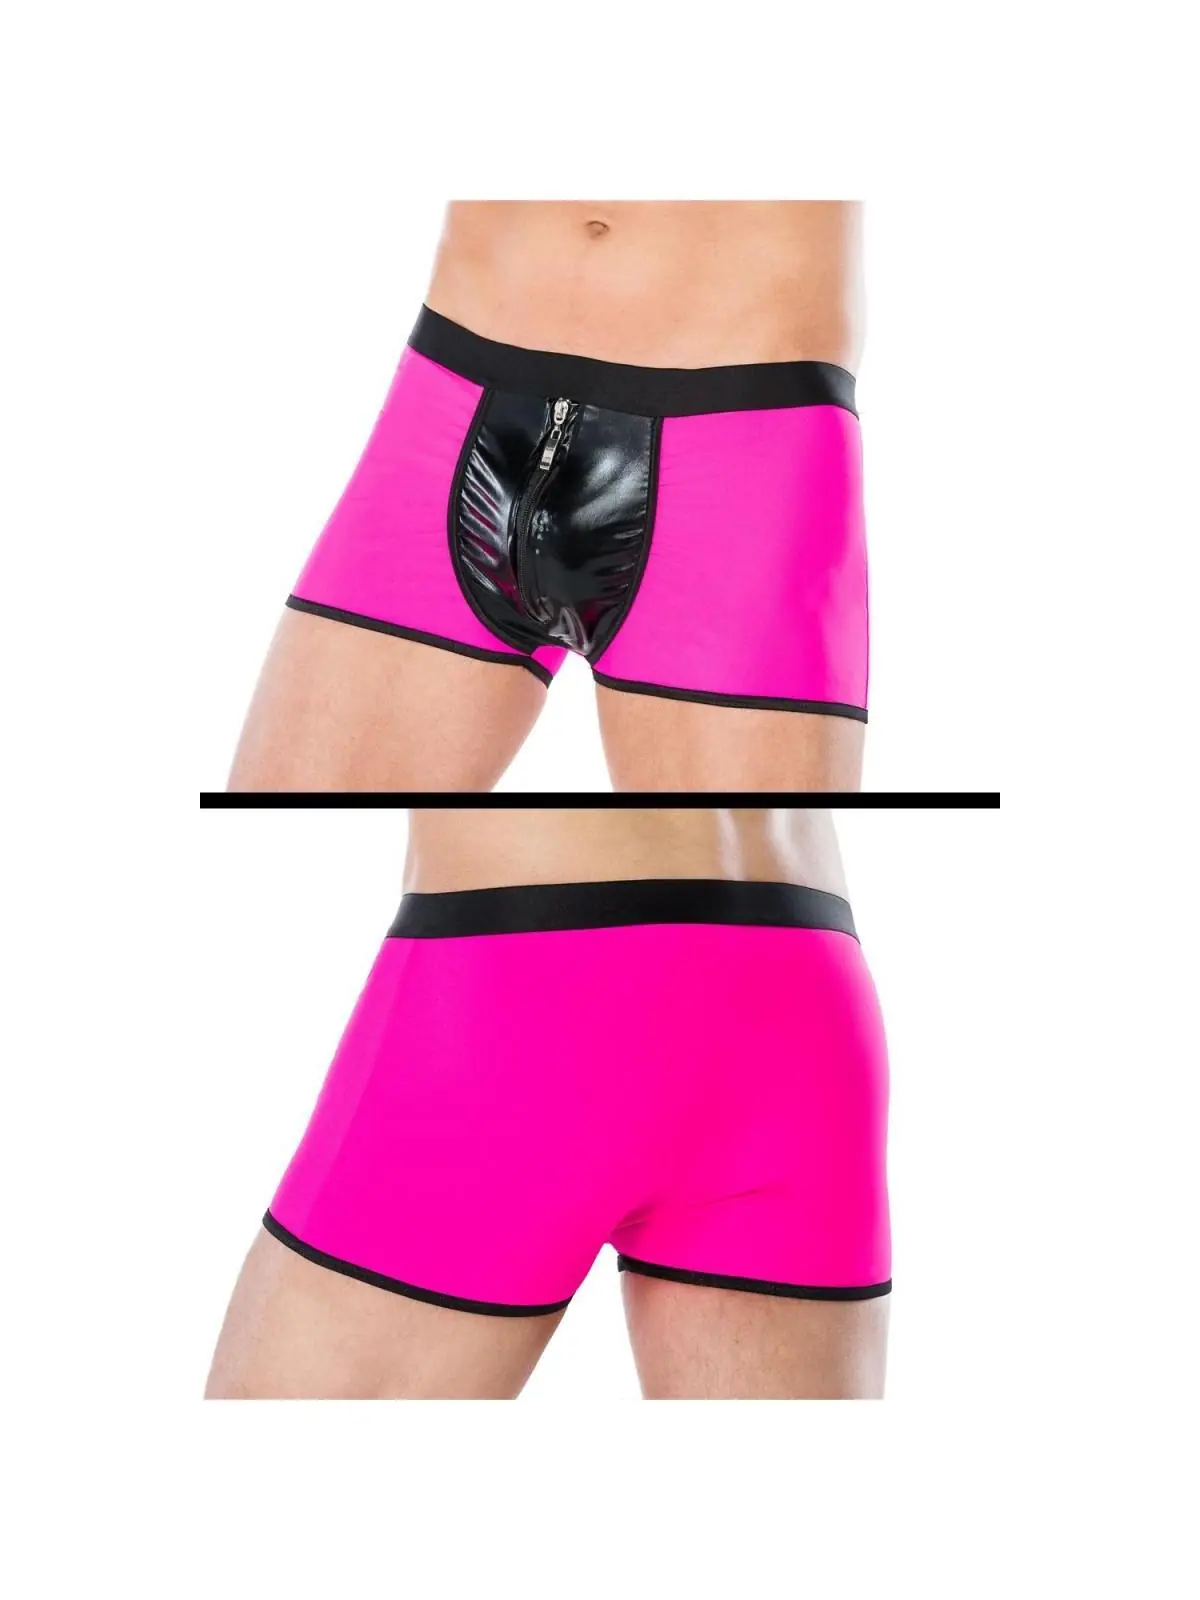 Boxershorts Pink Mc/9077 von Andalea kaufen - Fesselliebe